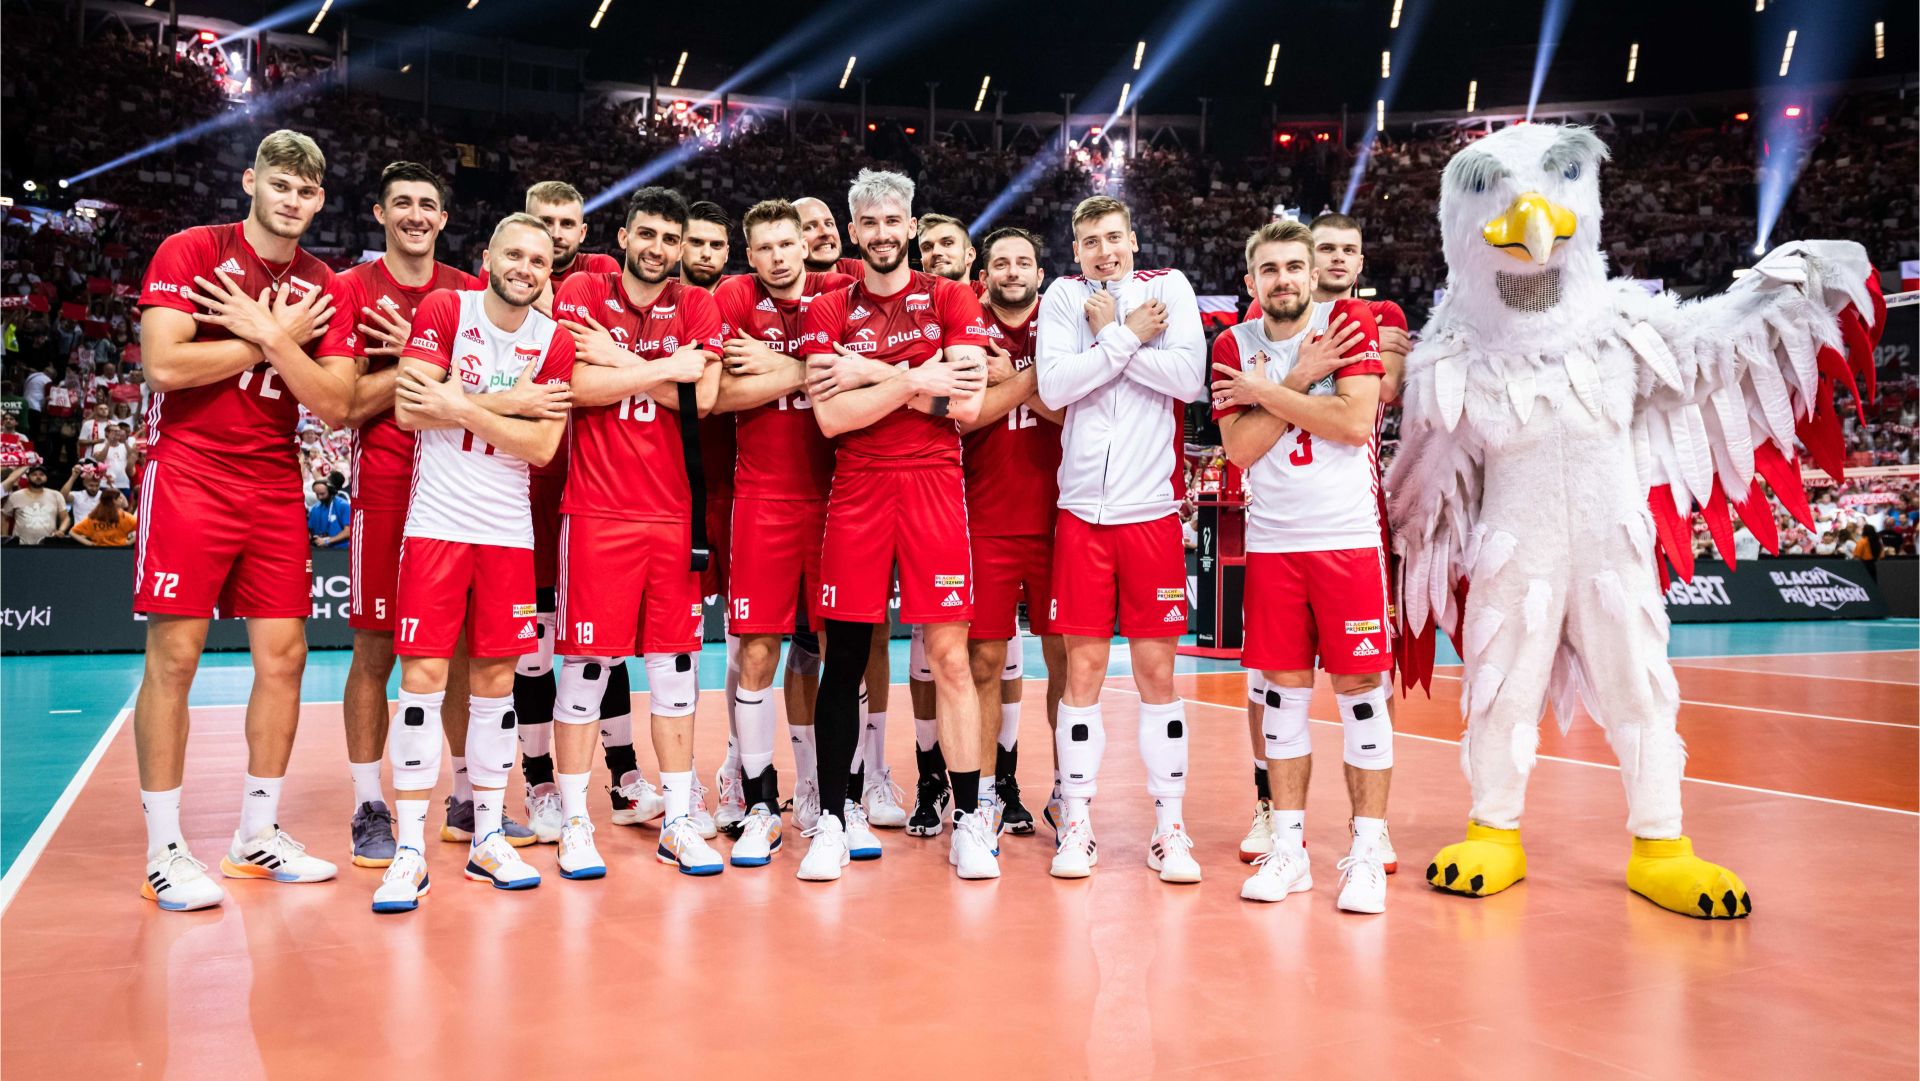 Polscy siatkarze wystąpią w niedzielę w finale Mistrzostw Świata. Rywalem kadry trenera Nikoli Grbića będzie reprezentacja Włoch.